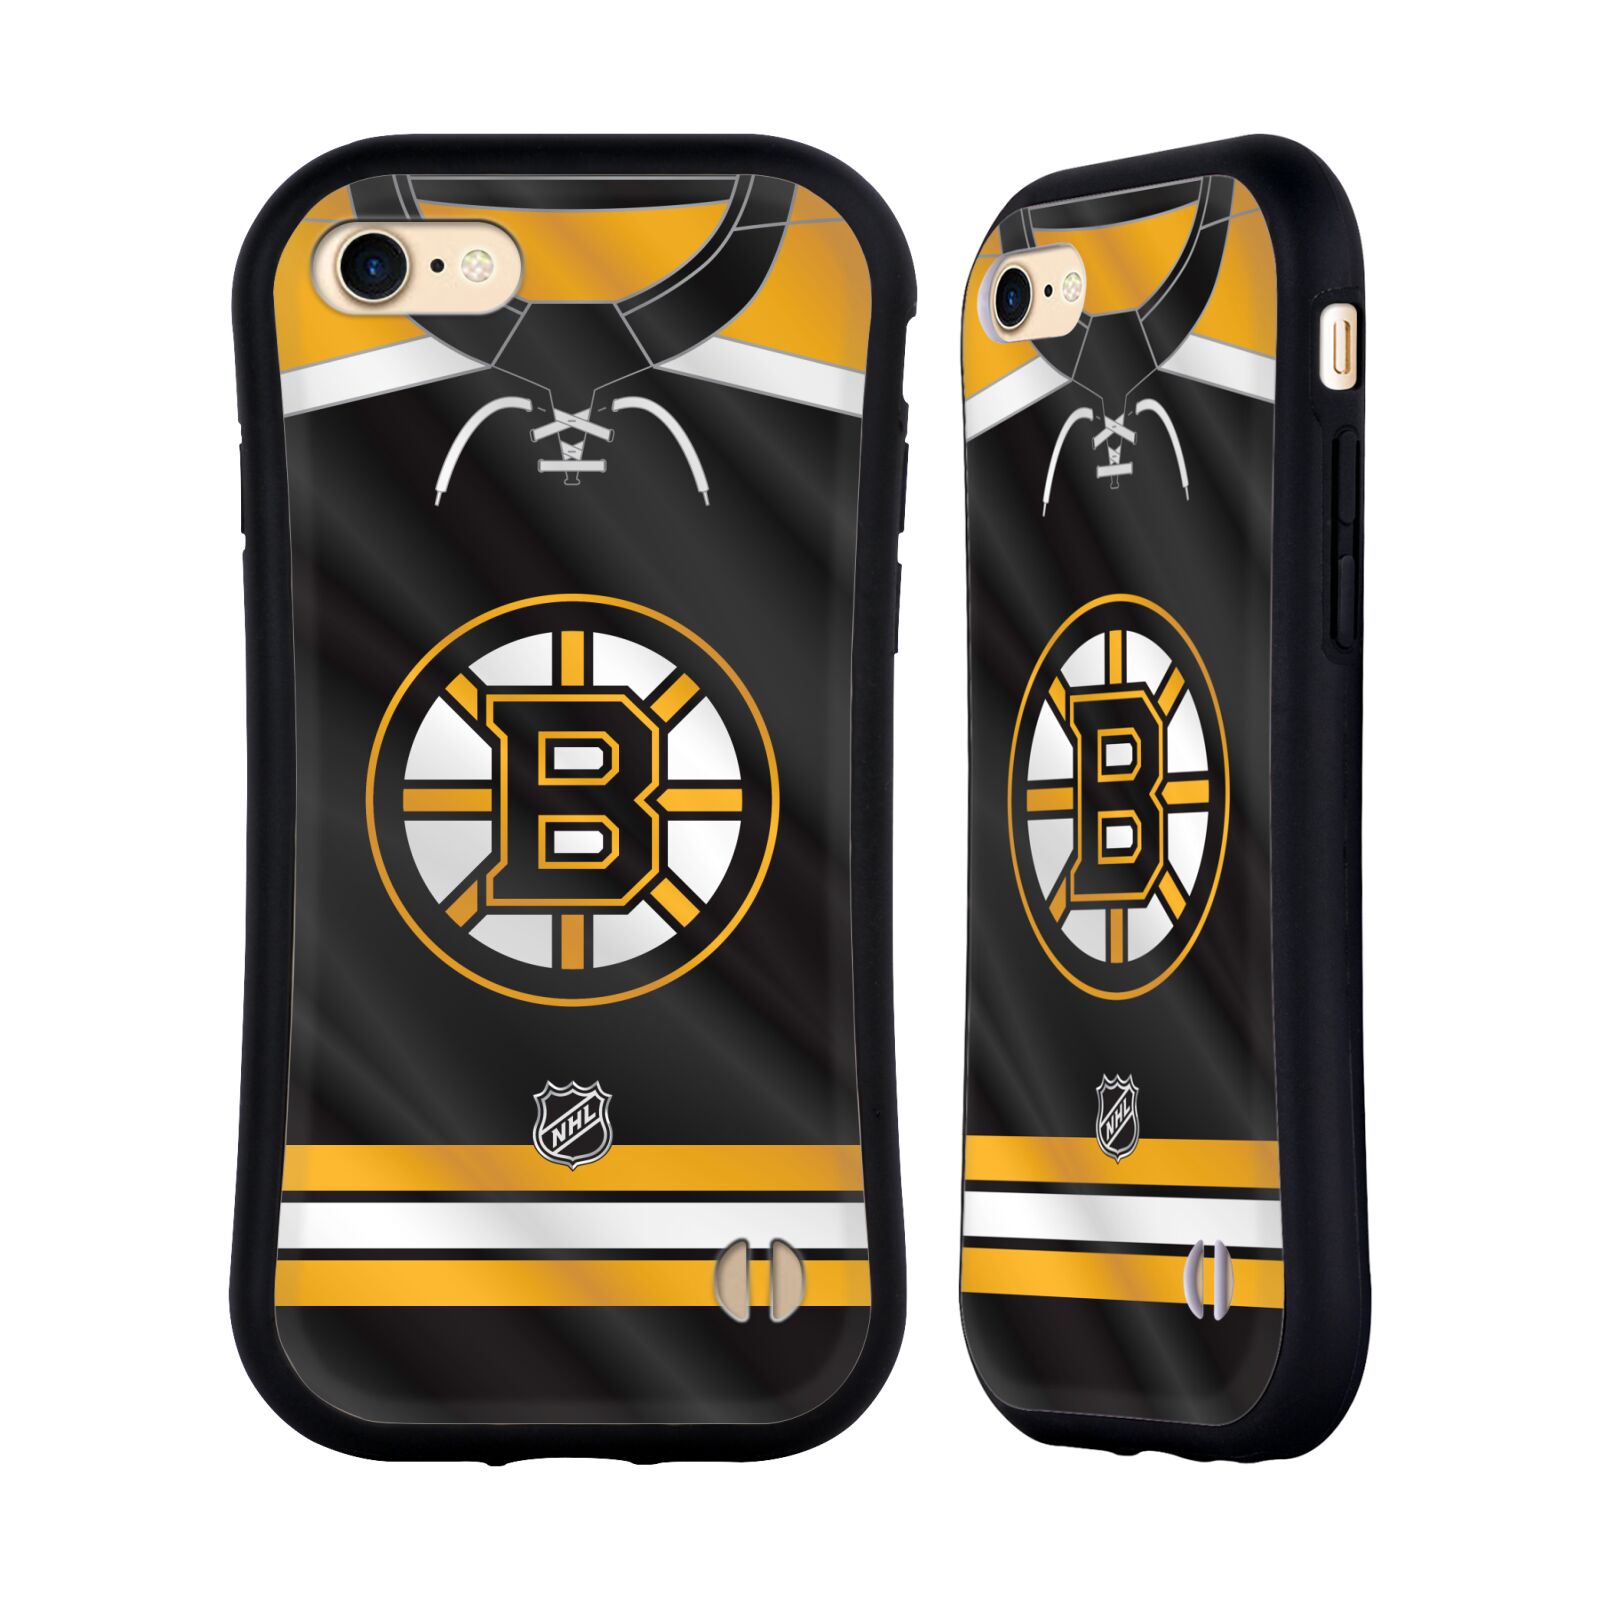 Obal na mobil Apple iPhone 7/8, SE 2020 - HEAD CASE - NHL - Boston Bruins znak na dresu